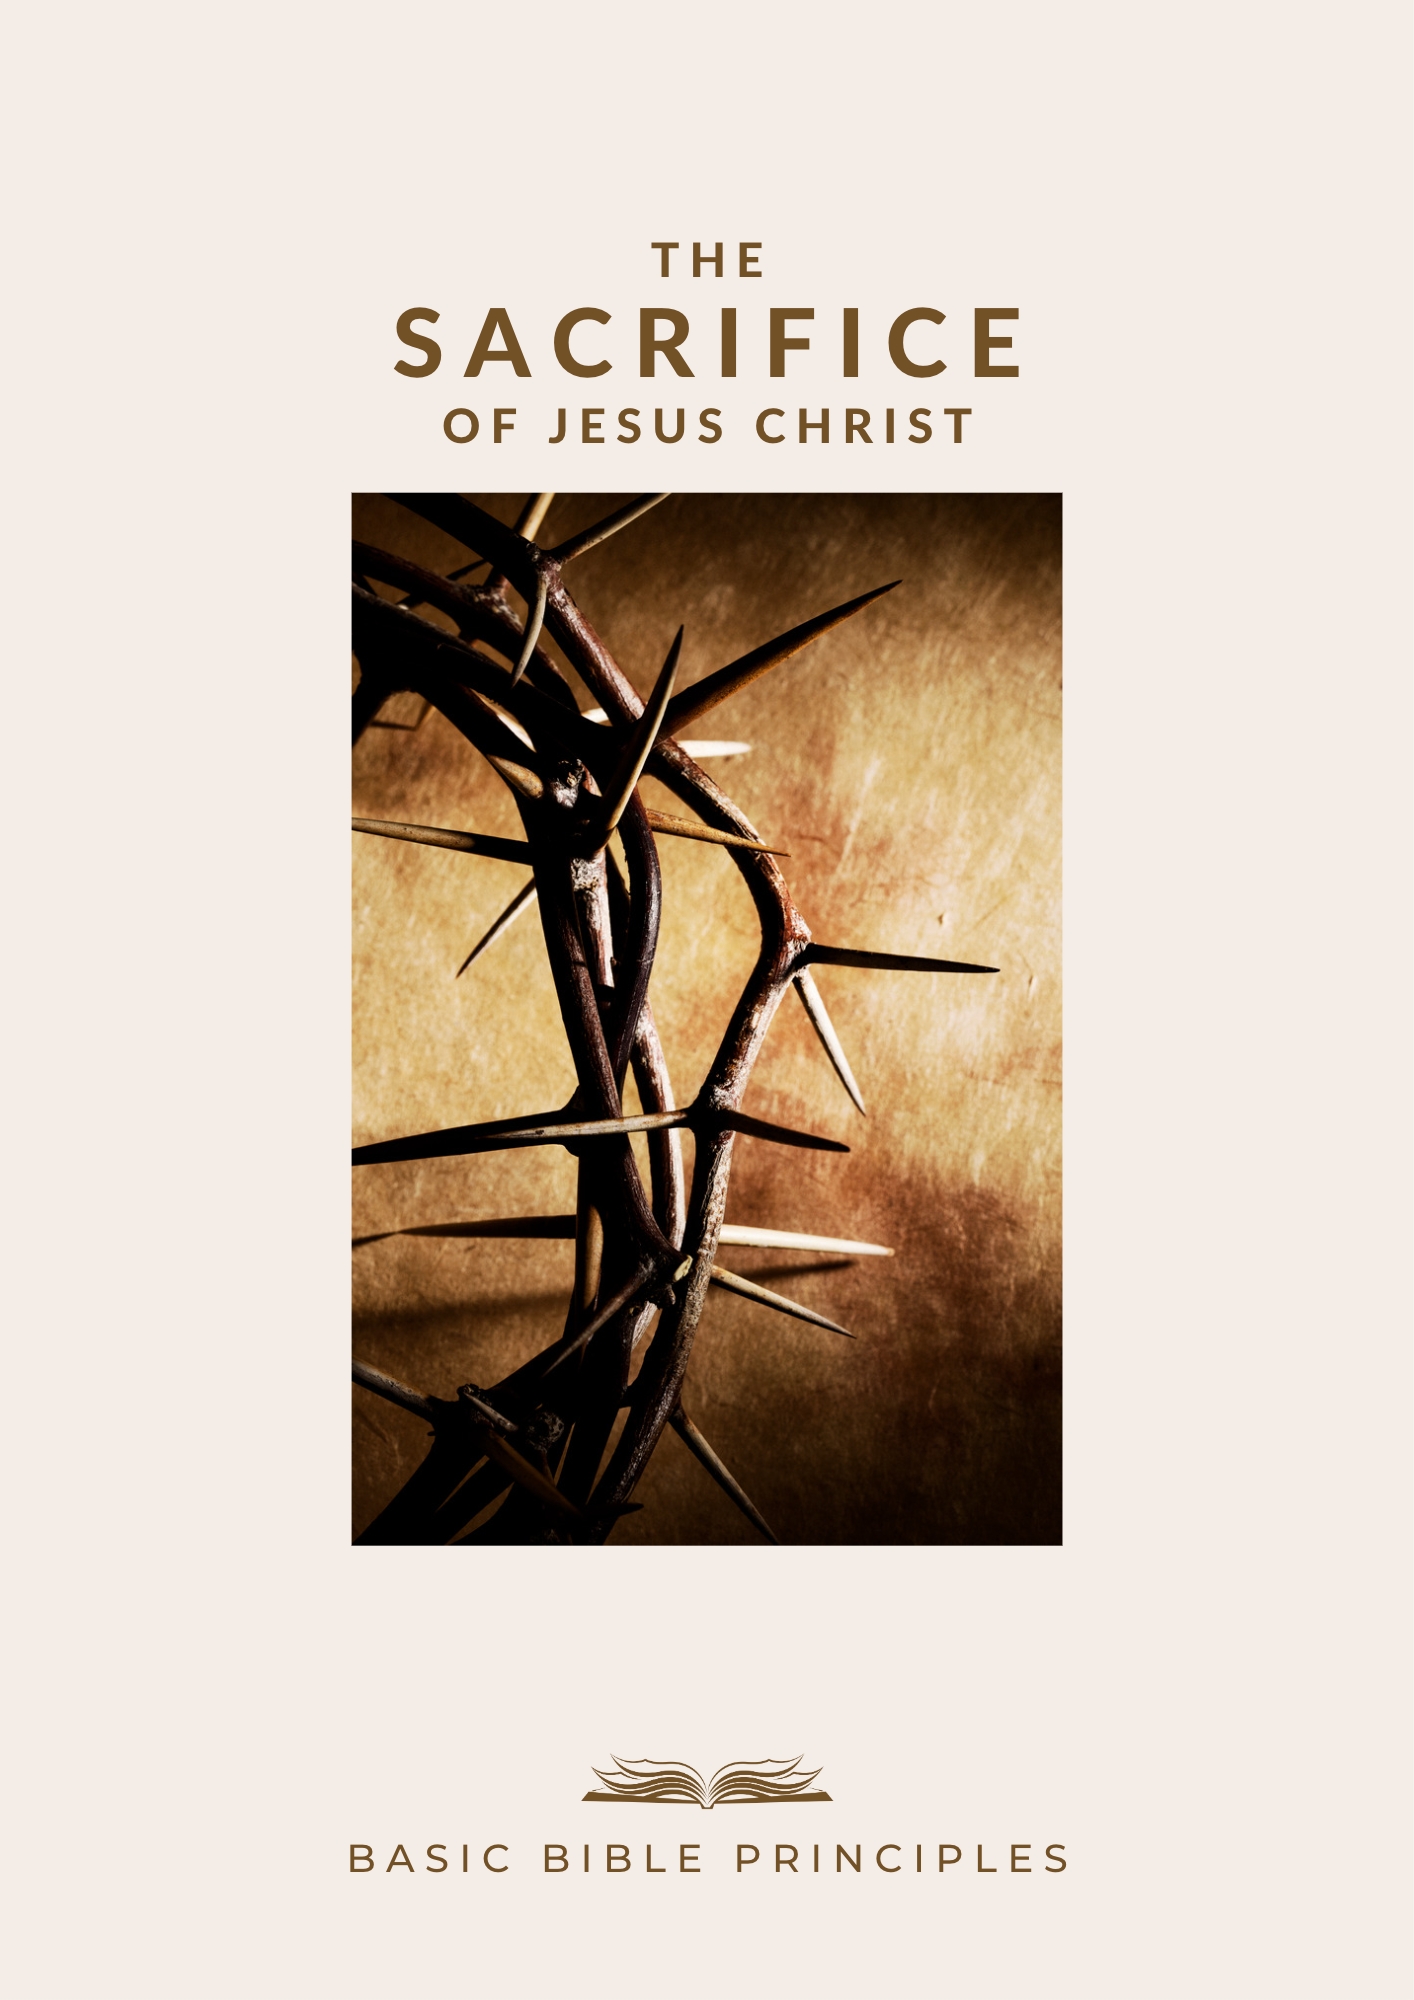 Basic Bible Principles: THE SACRIFICE OF CHRIST